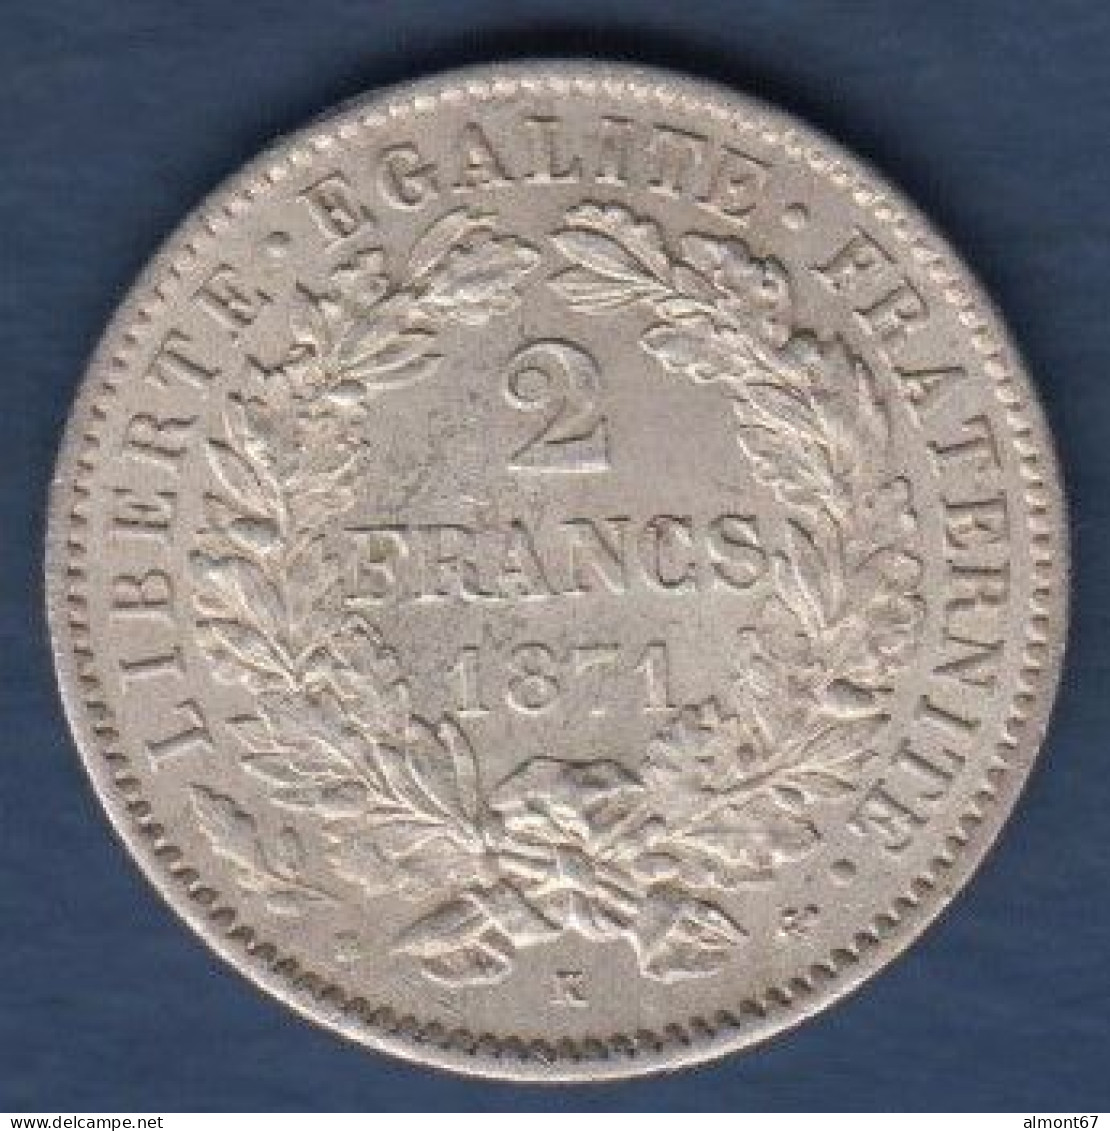 Cérès - 2 Francs 1871 K - 1870-1871 Government Of National Defense